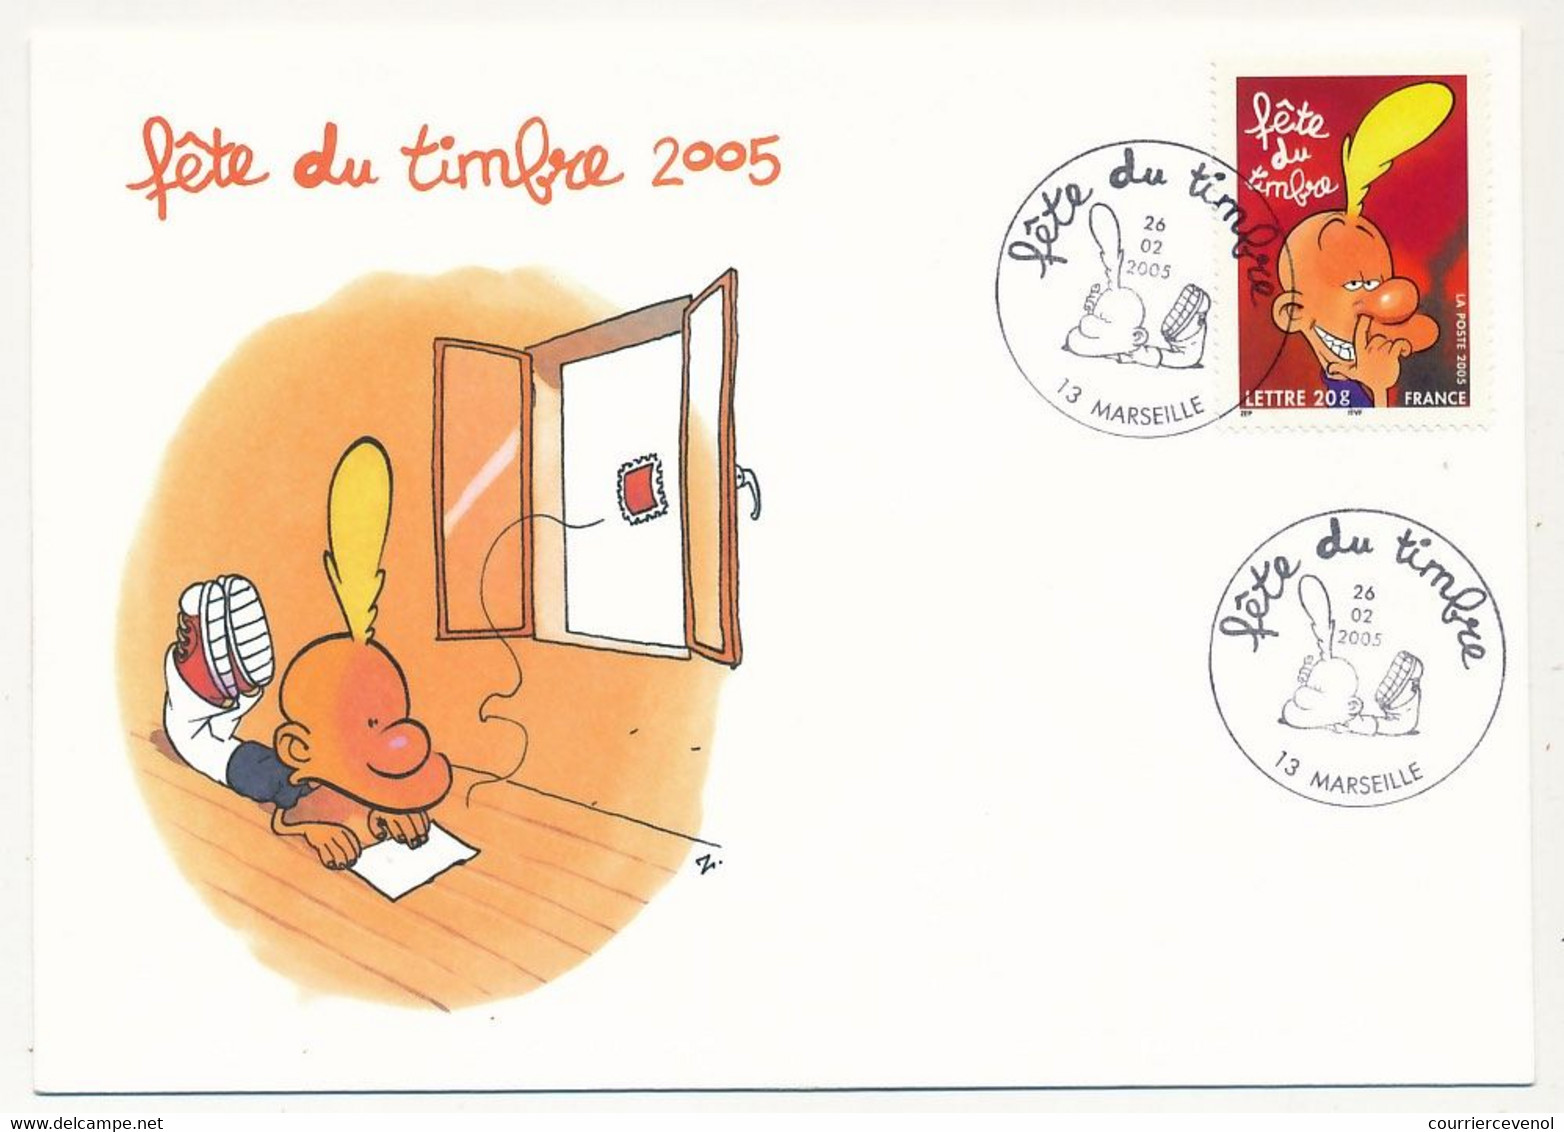 France - 2 Enveloppes Fédérales - Fête Du Timbre 2005 - TITEUF - Oblit. 13 MARSEILLE - 26.02.2005 - Lettres & Documents